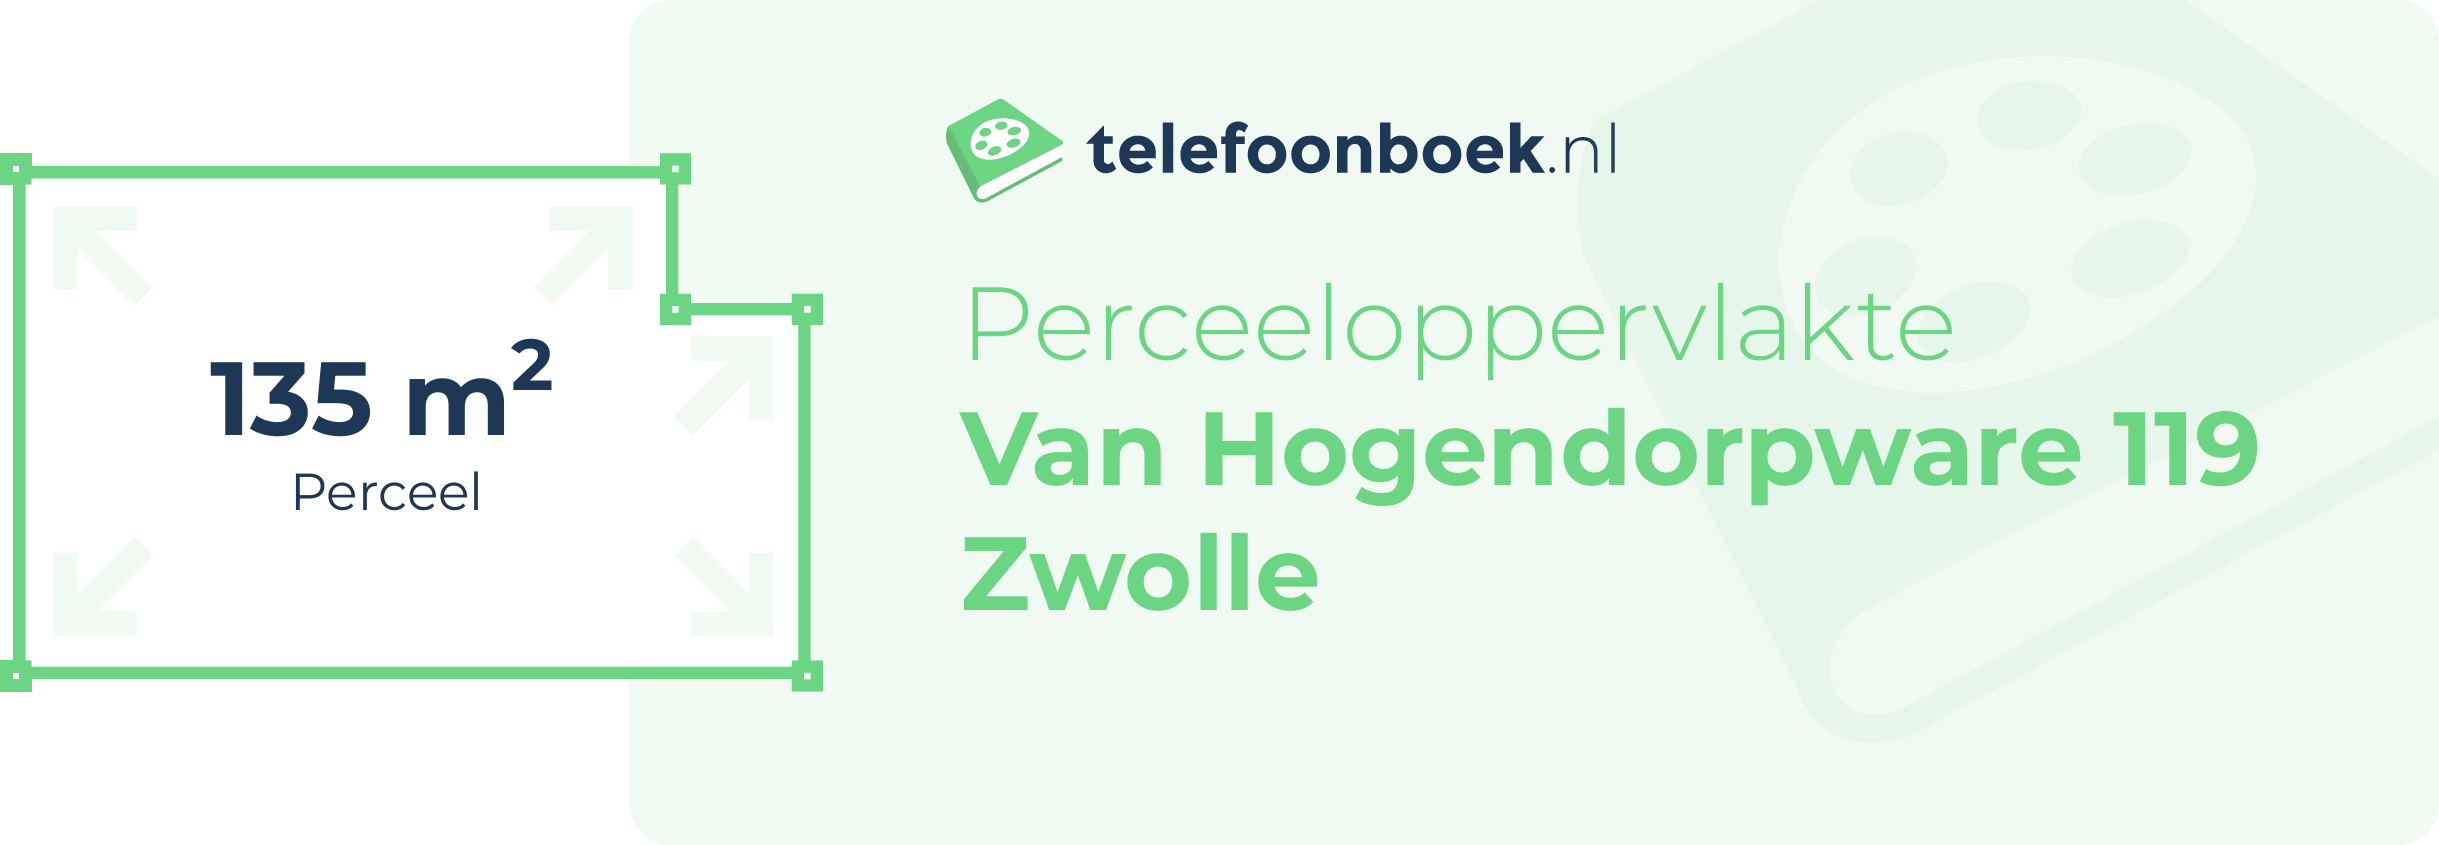 Perceeloppervlakte Van Hogendorpware 119 Zwolle